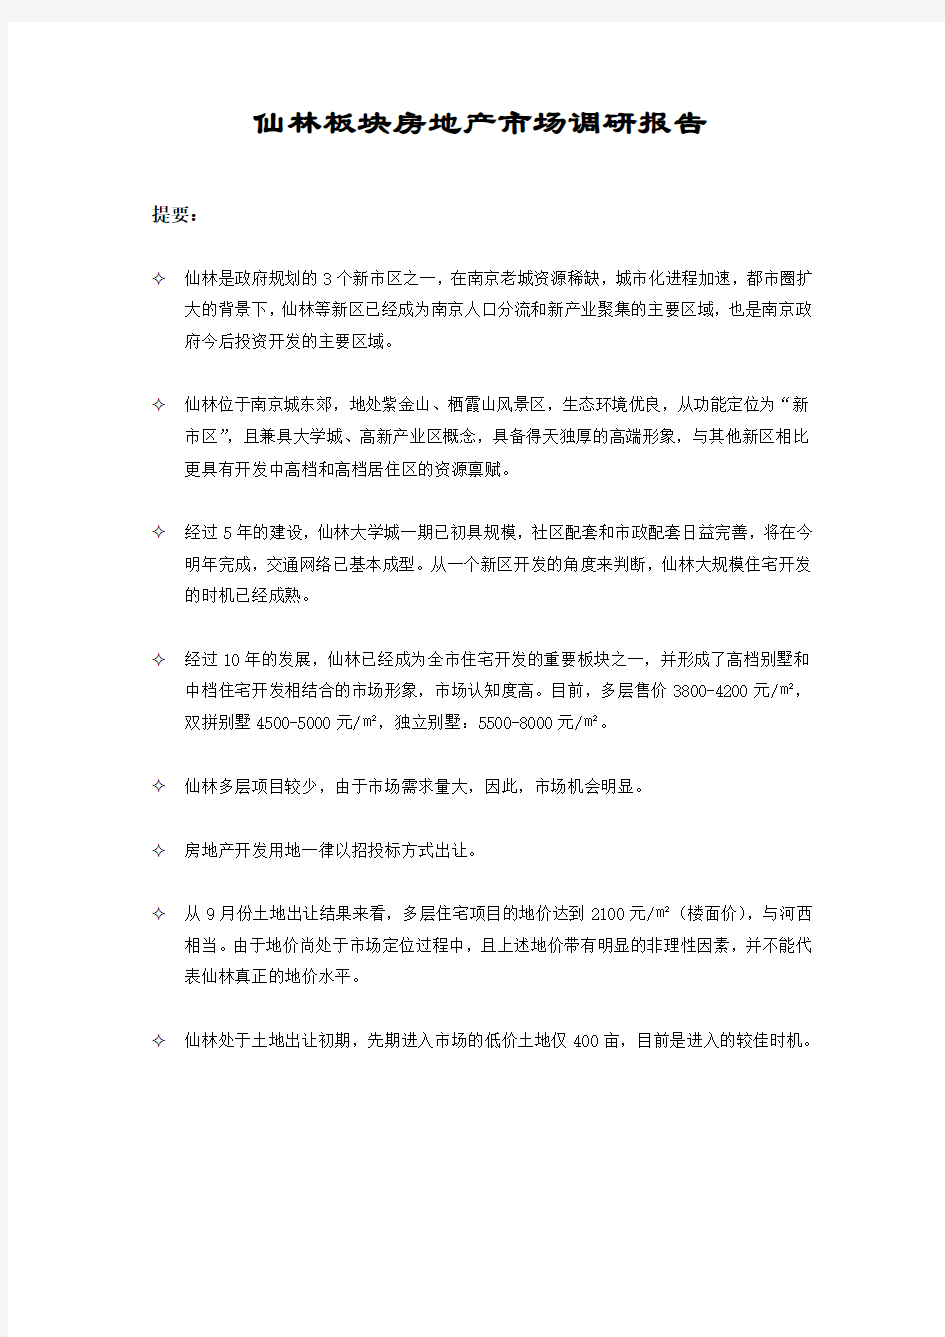 南京仙林板块房地产市场调研报告-30页-2009年